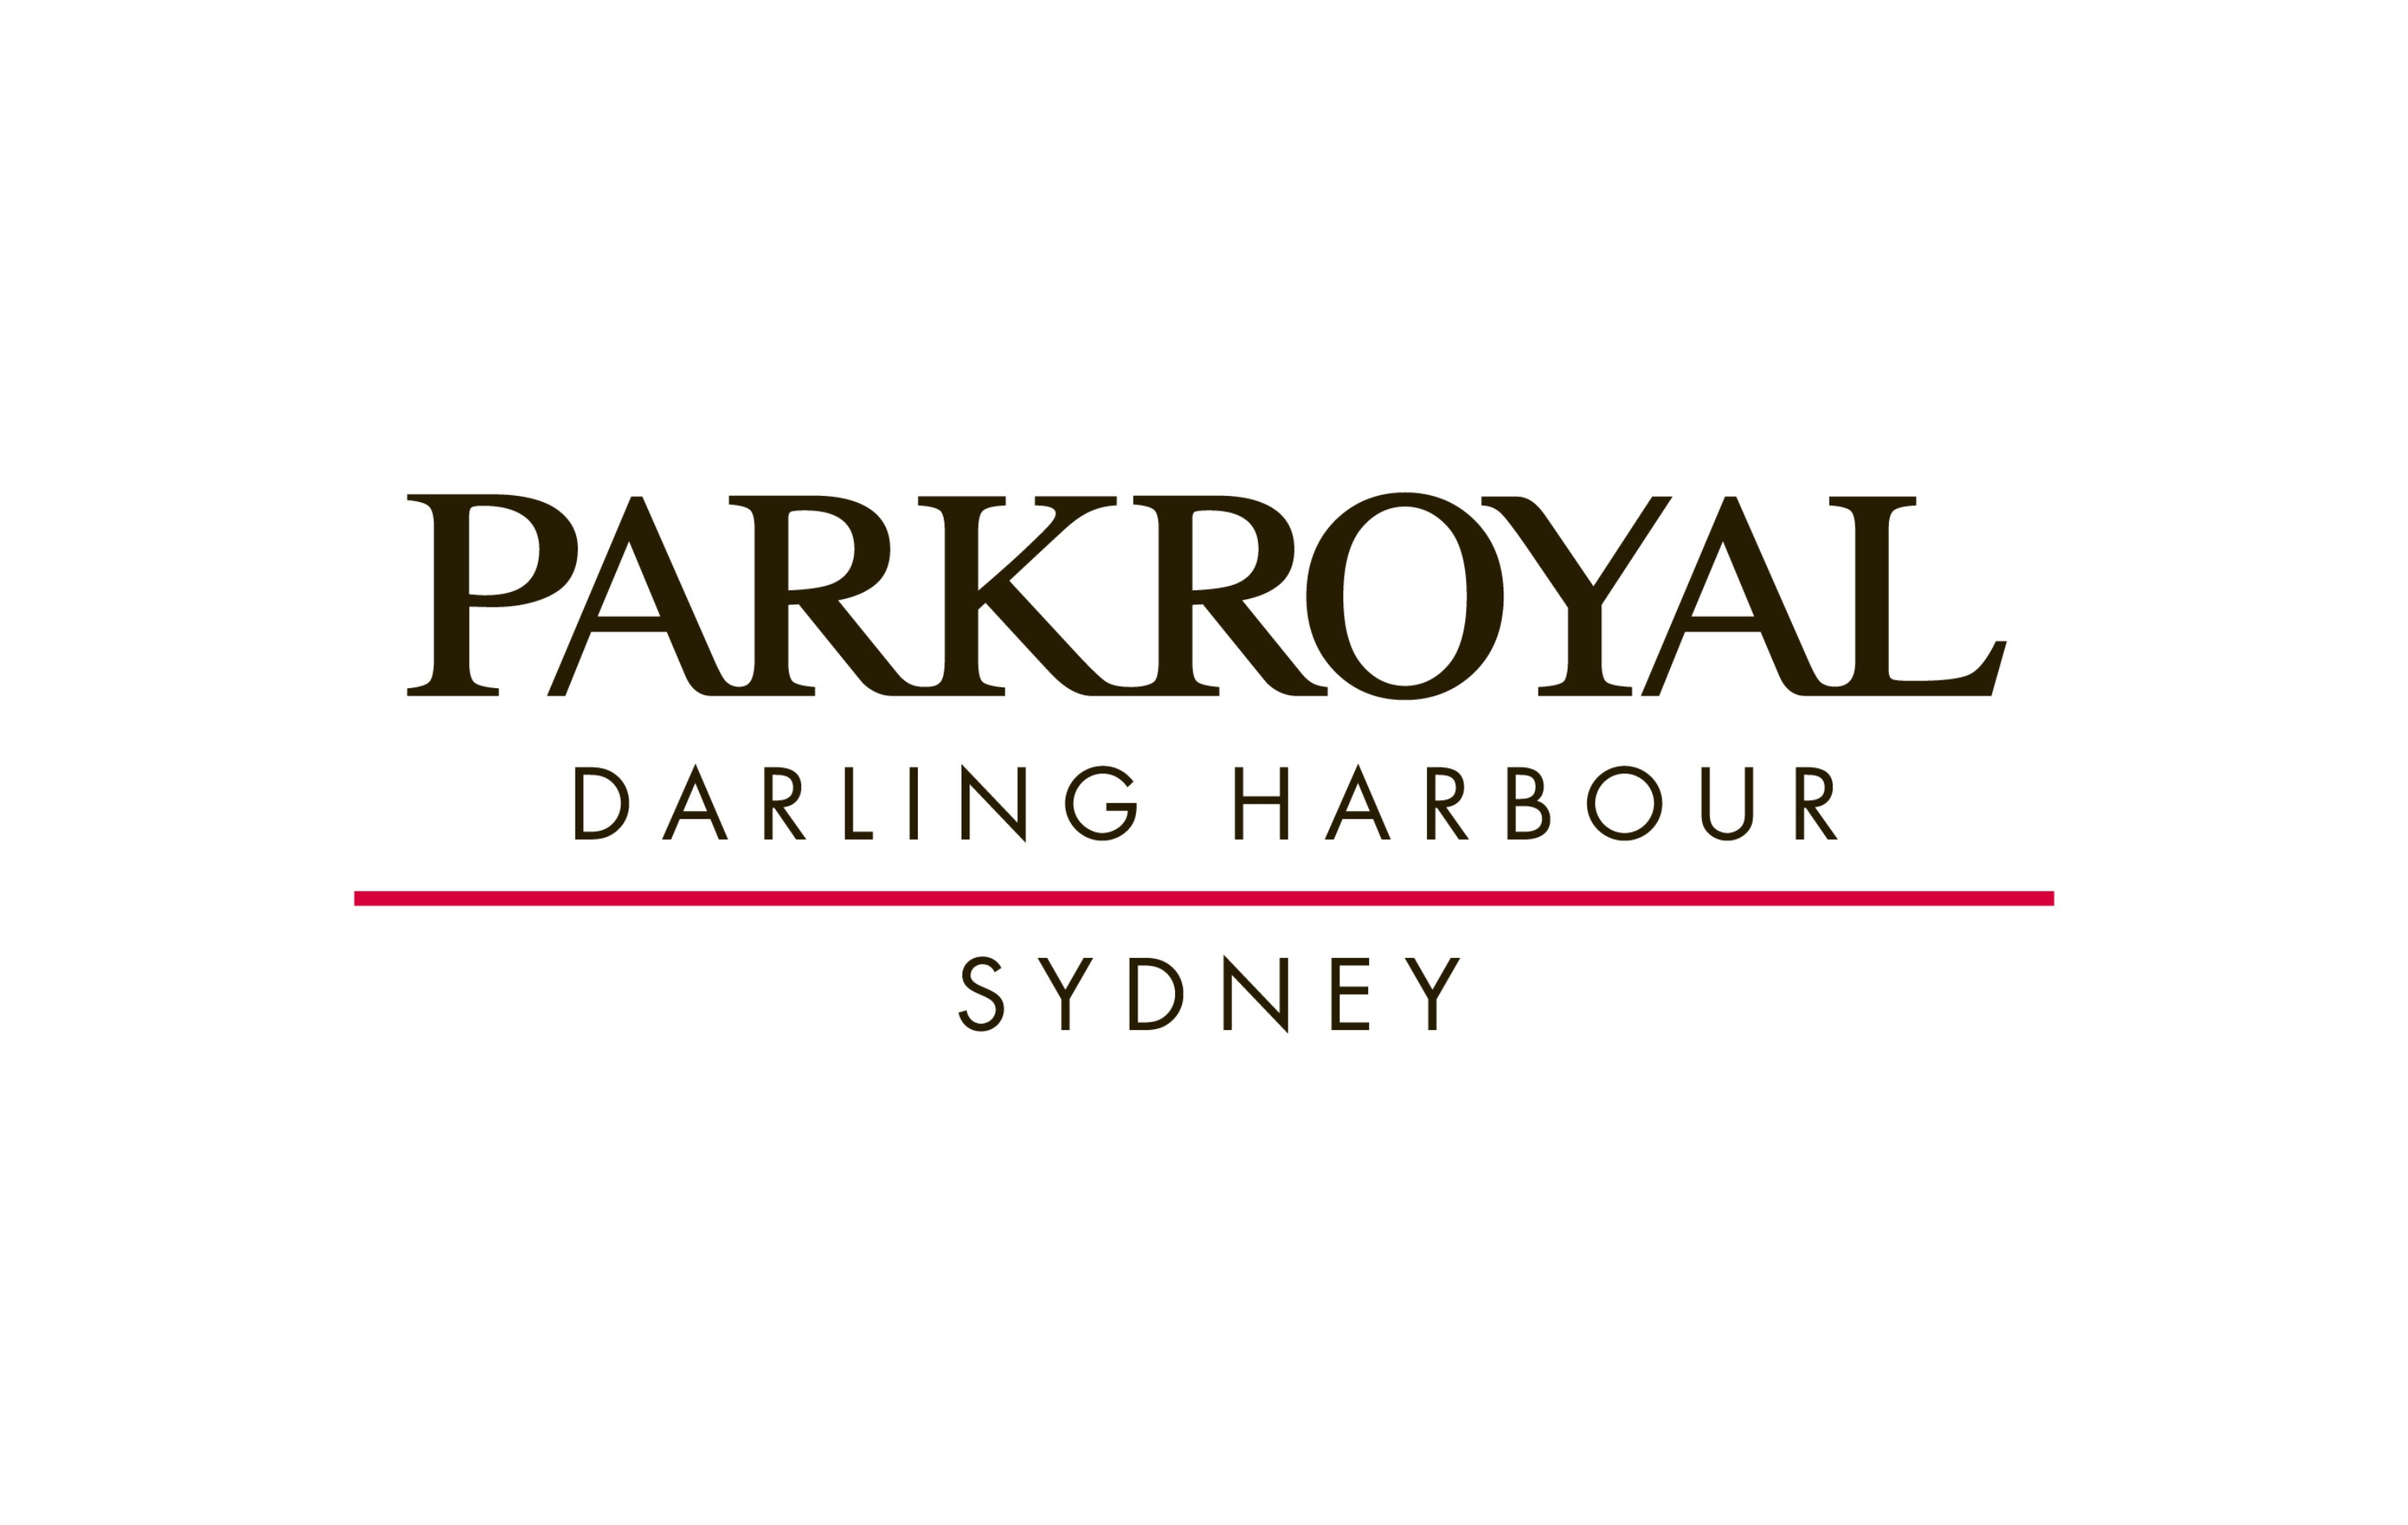 PARKROYAL Darling Harbour, Sydney logo